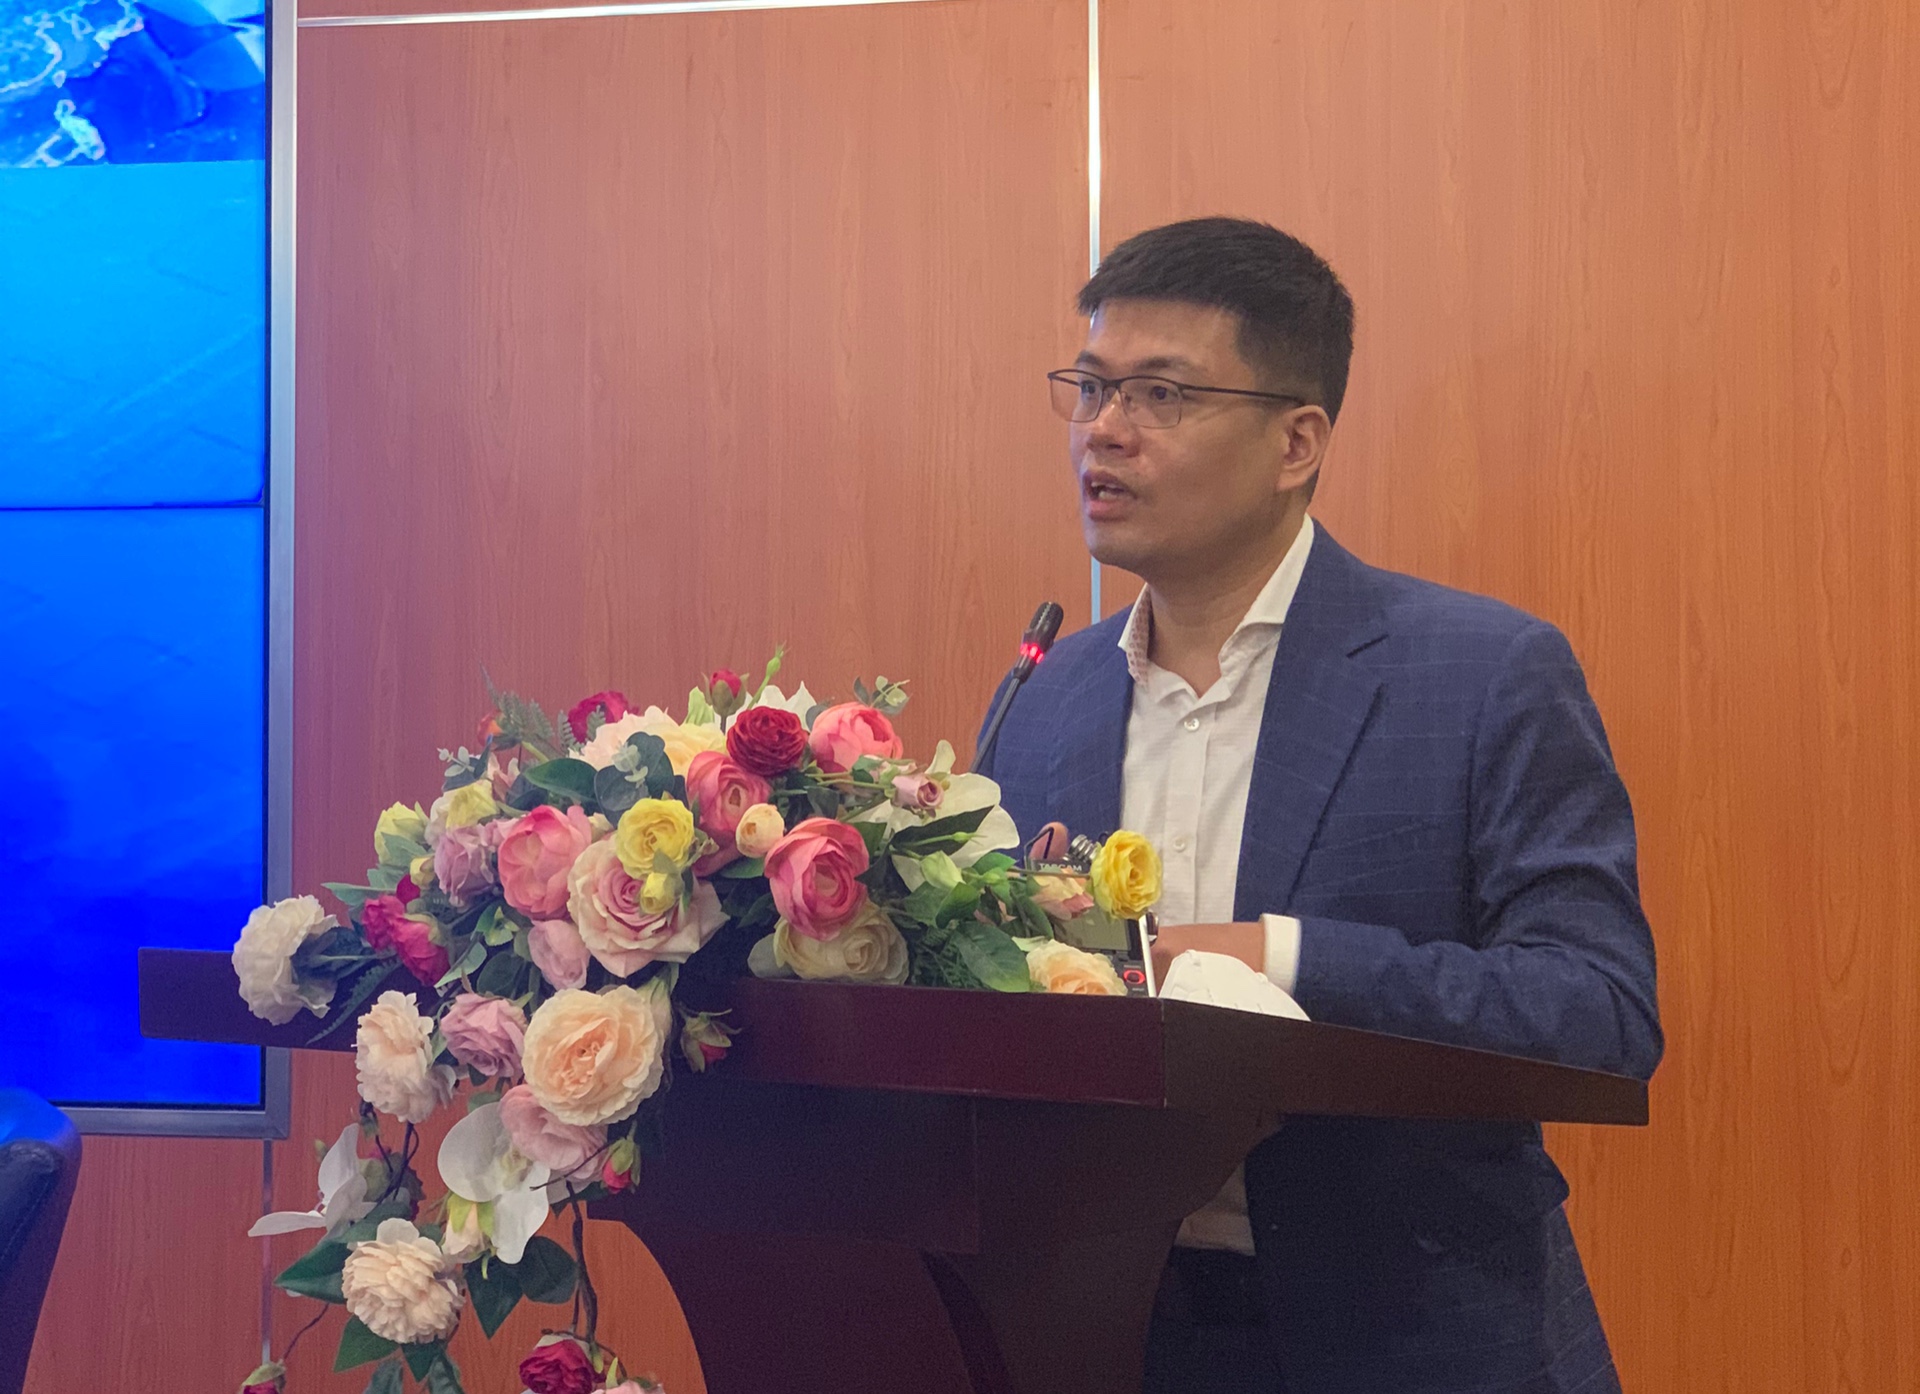 ông Nguyễn Anh Dương - Trưởng ban Nghiên cứu Tổng hợp, Viện nghiên cứu quản lý kinh tế Trung ương (CIEM)